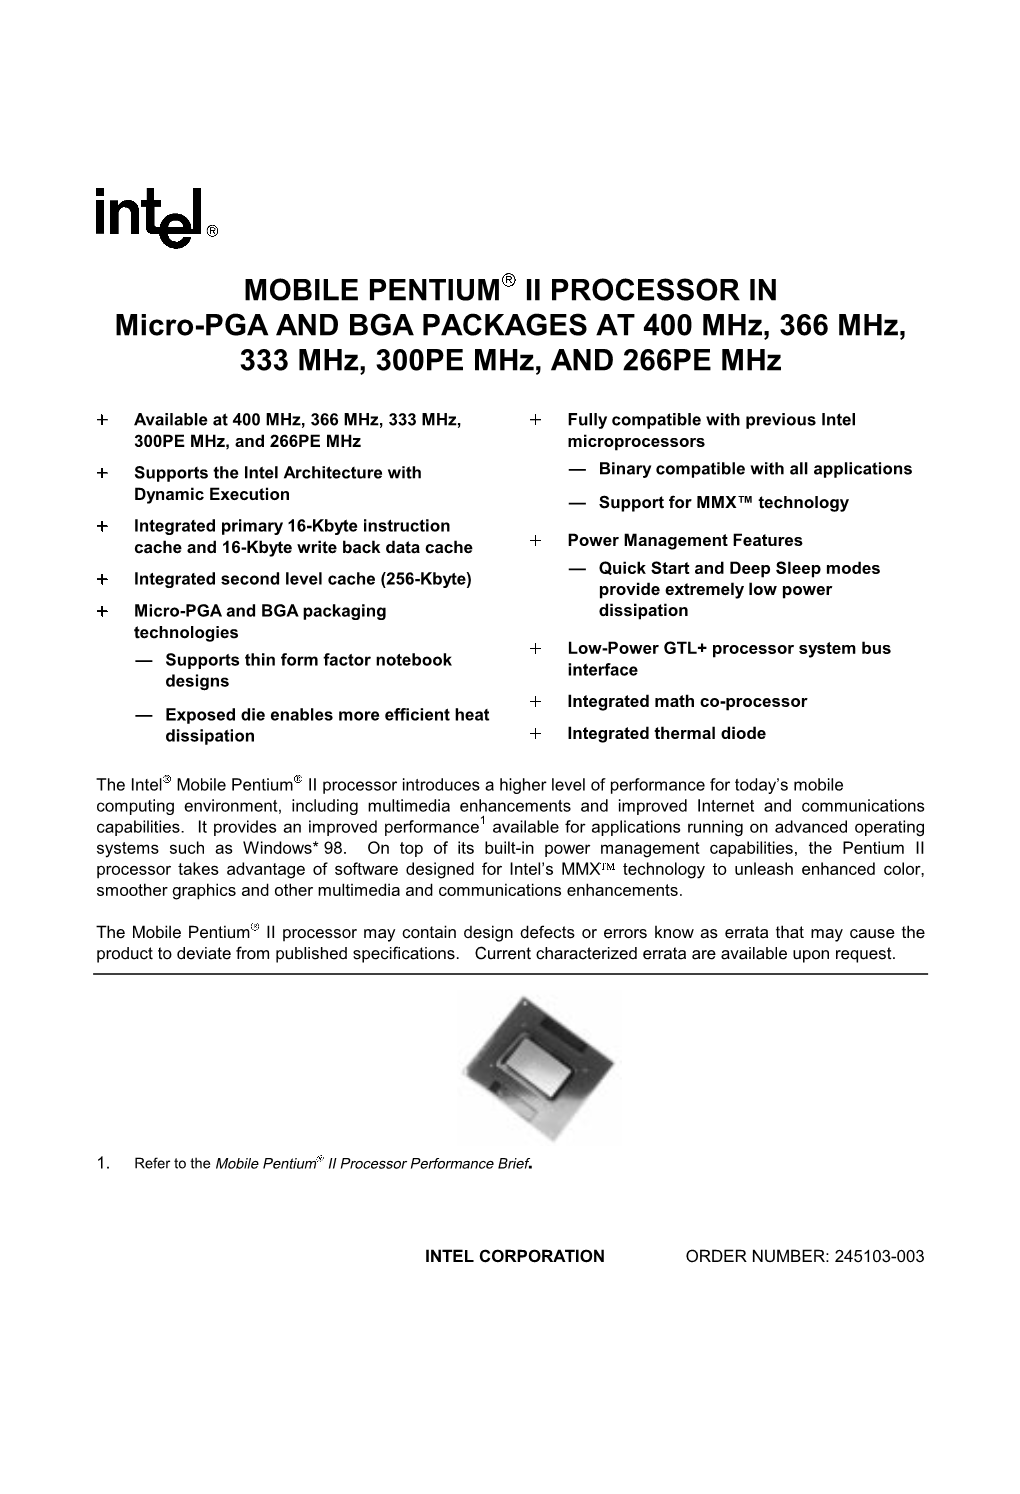 MOBILE PENTIUM II PROCESSOR in Micro-PGA and BGA PACKAGES